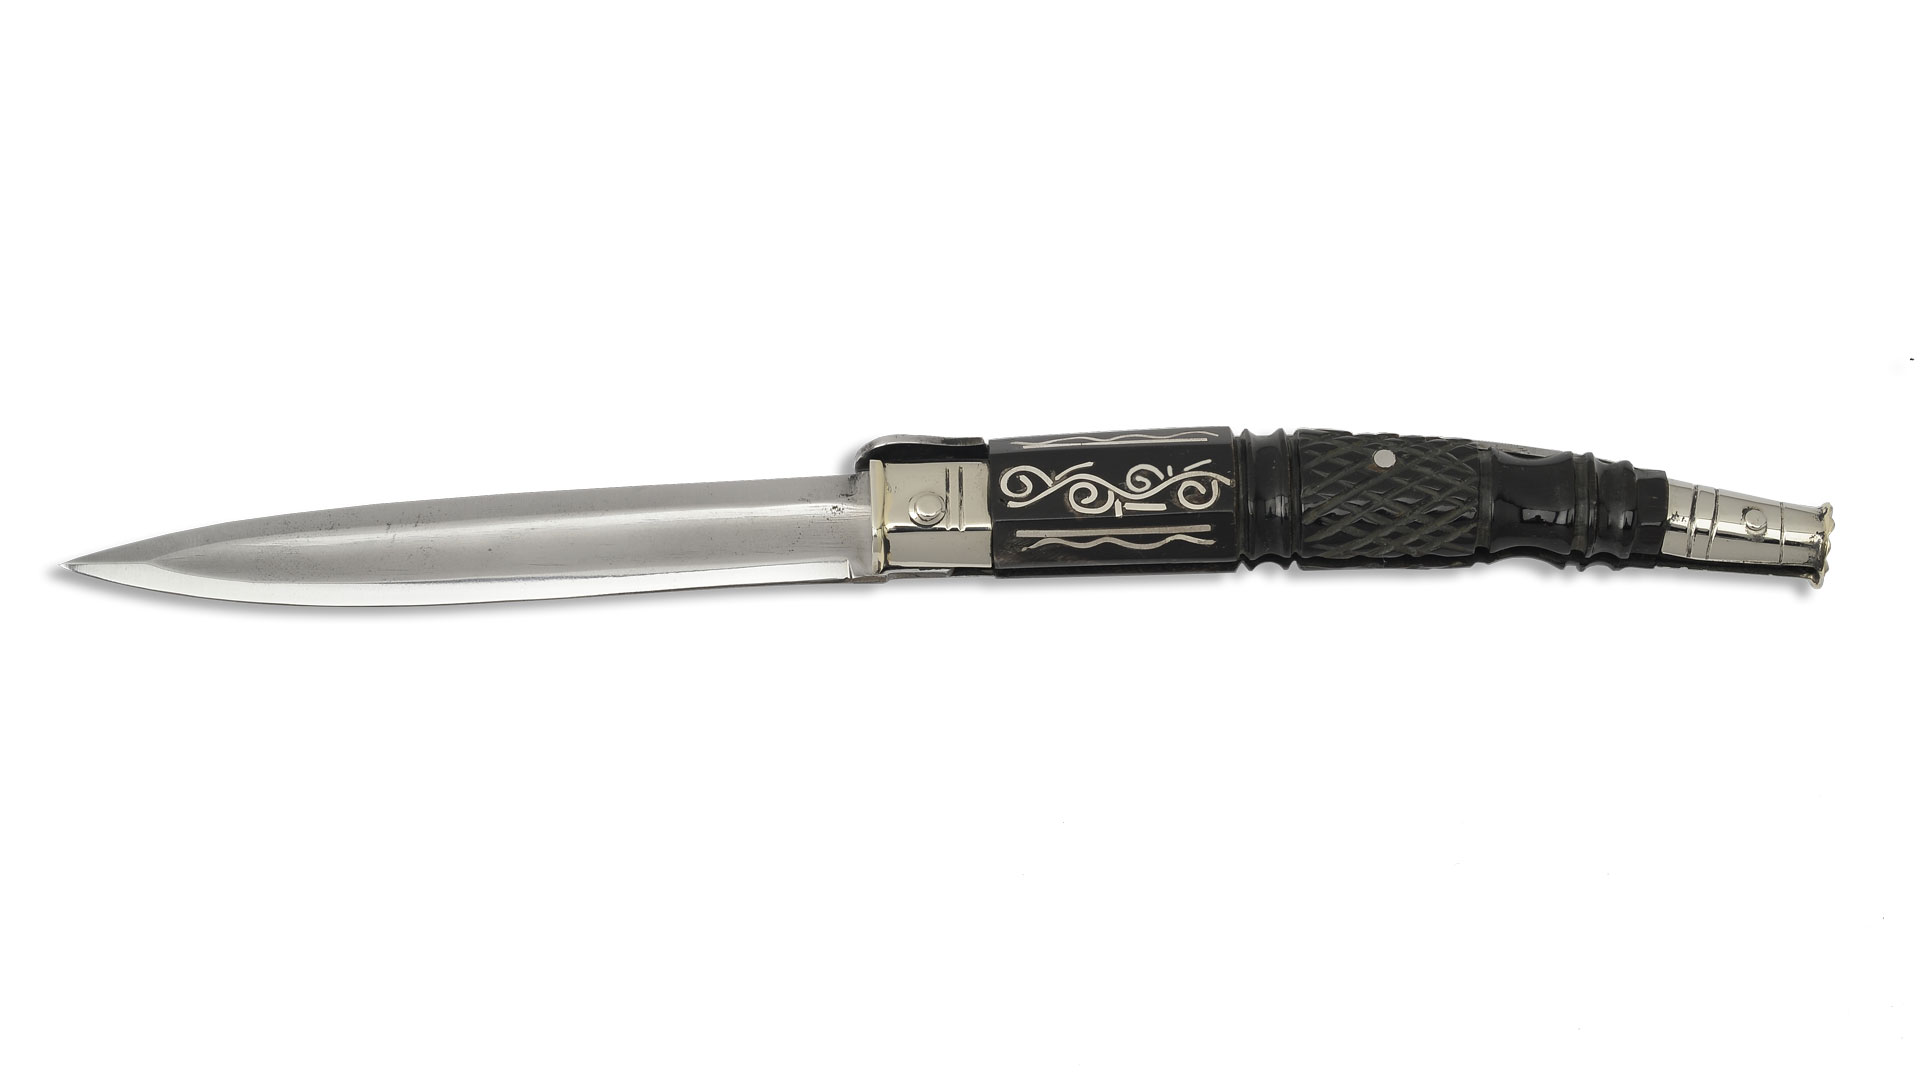 Традиционный нож из Италии, Balestra knife